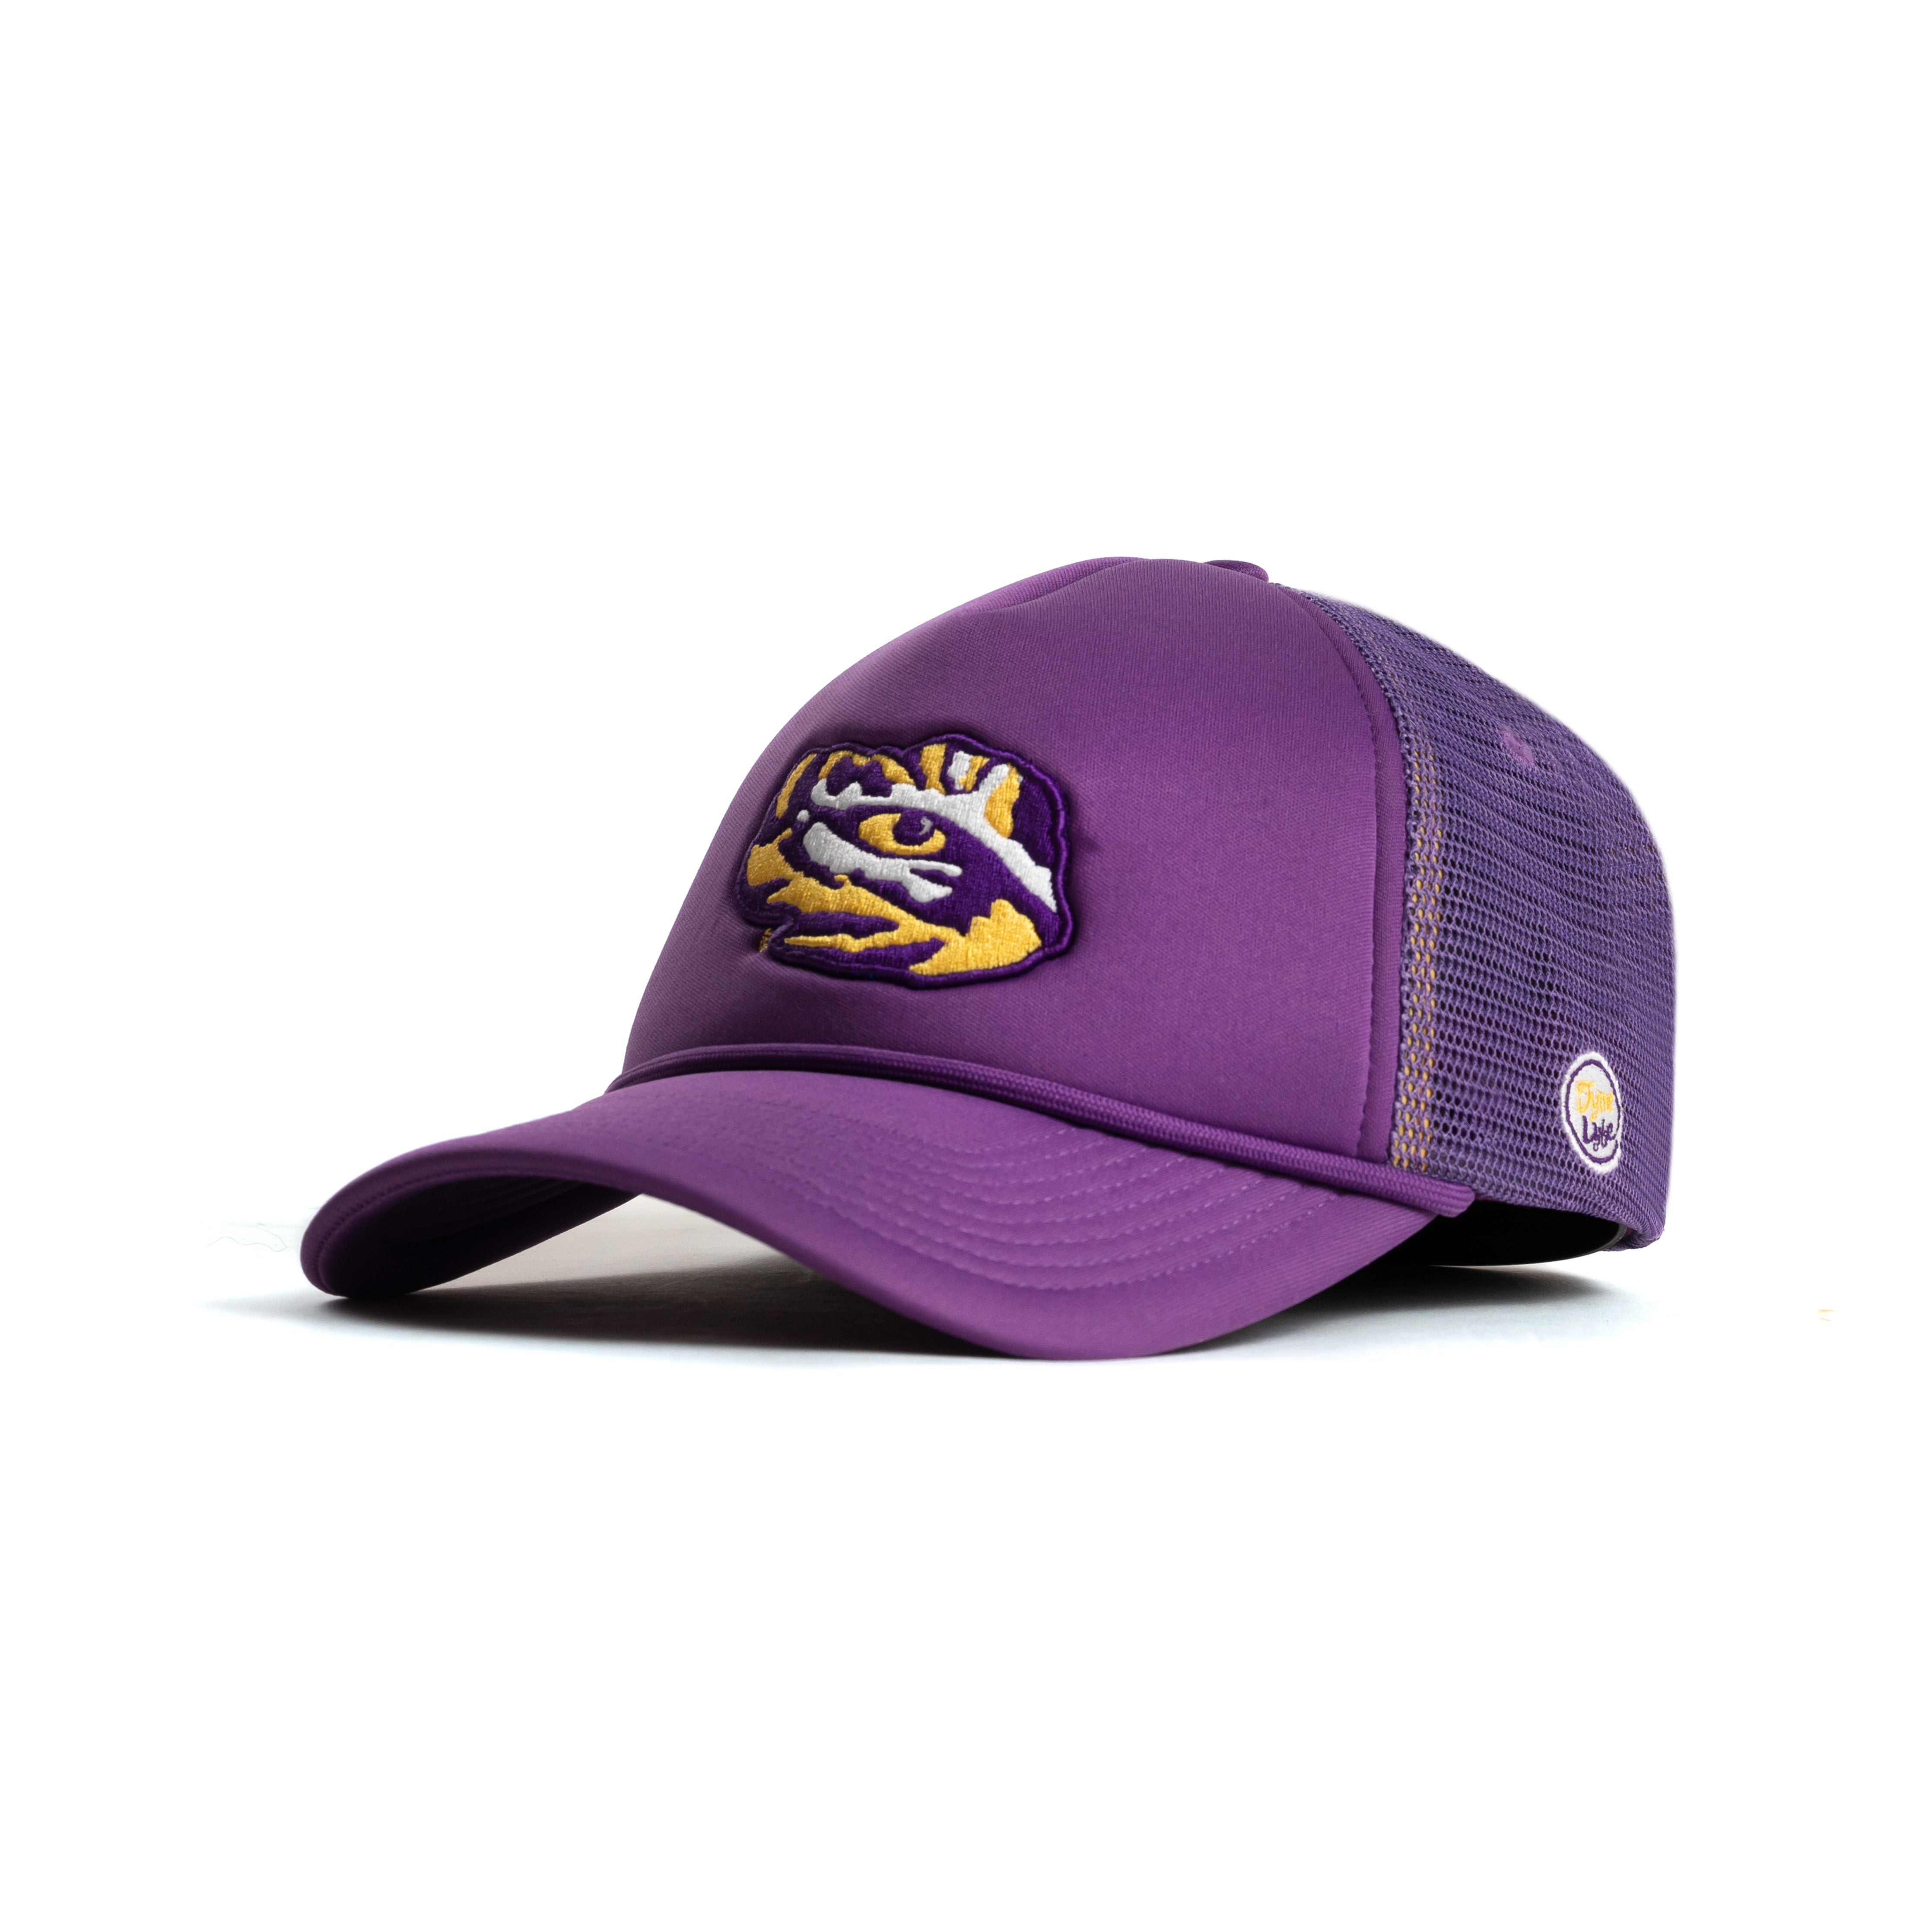 LSU Tigers Trucker Hat